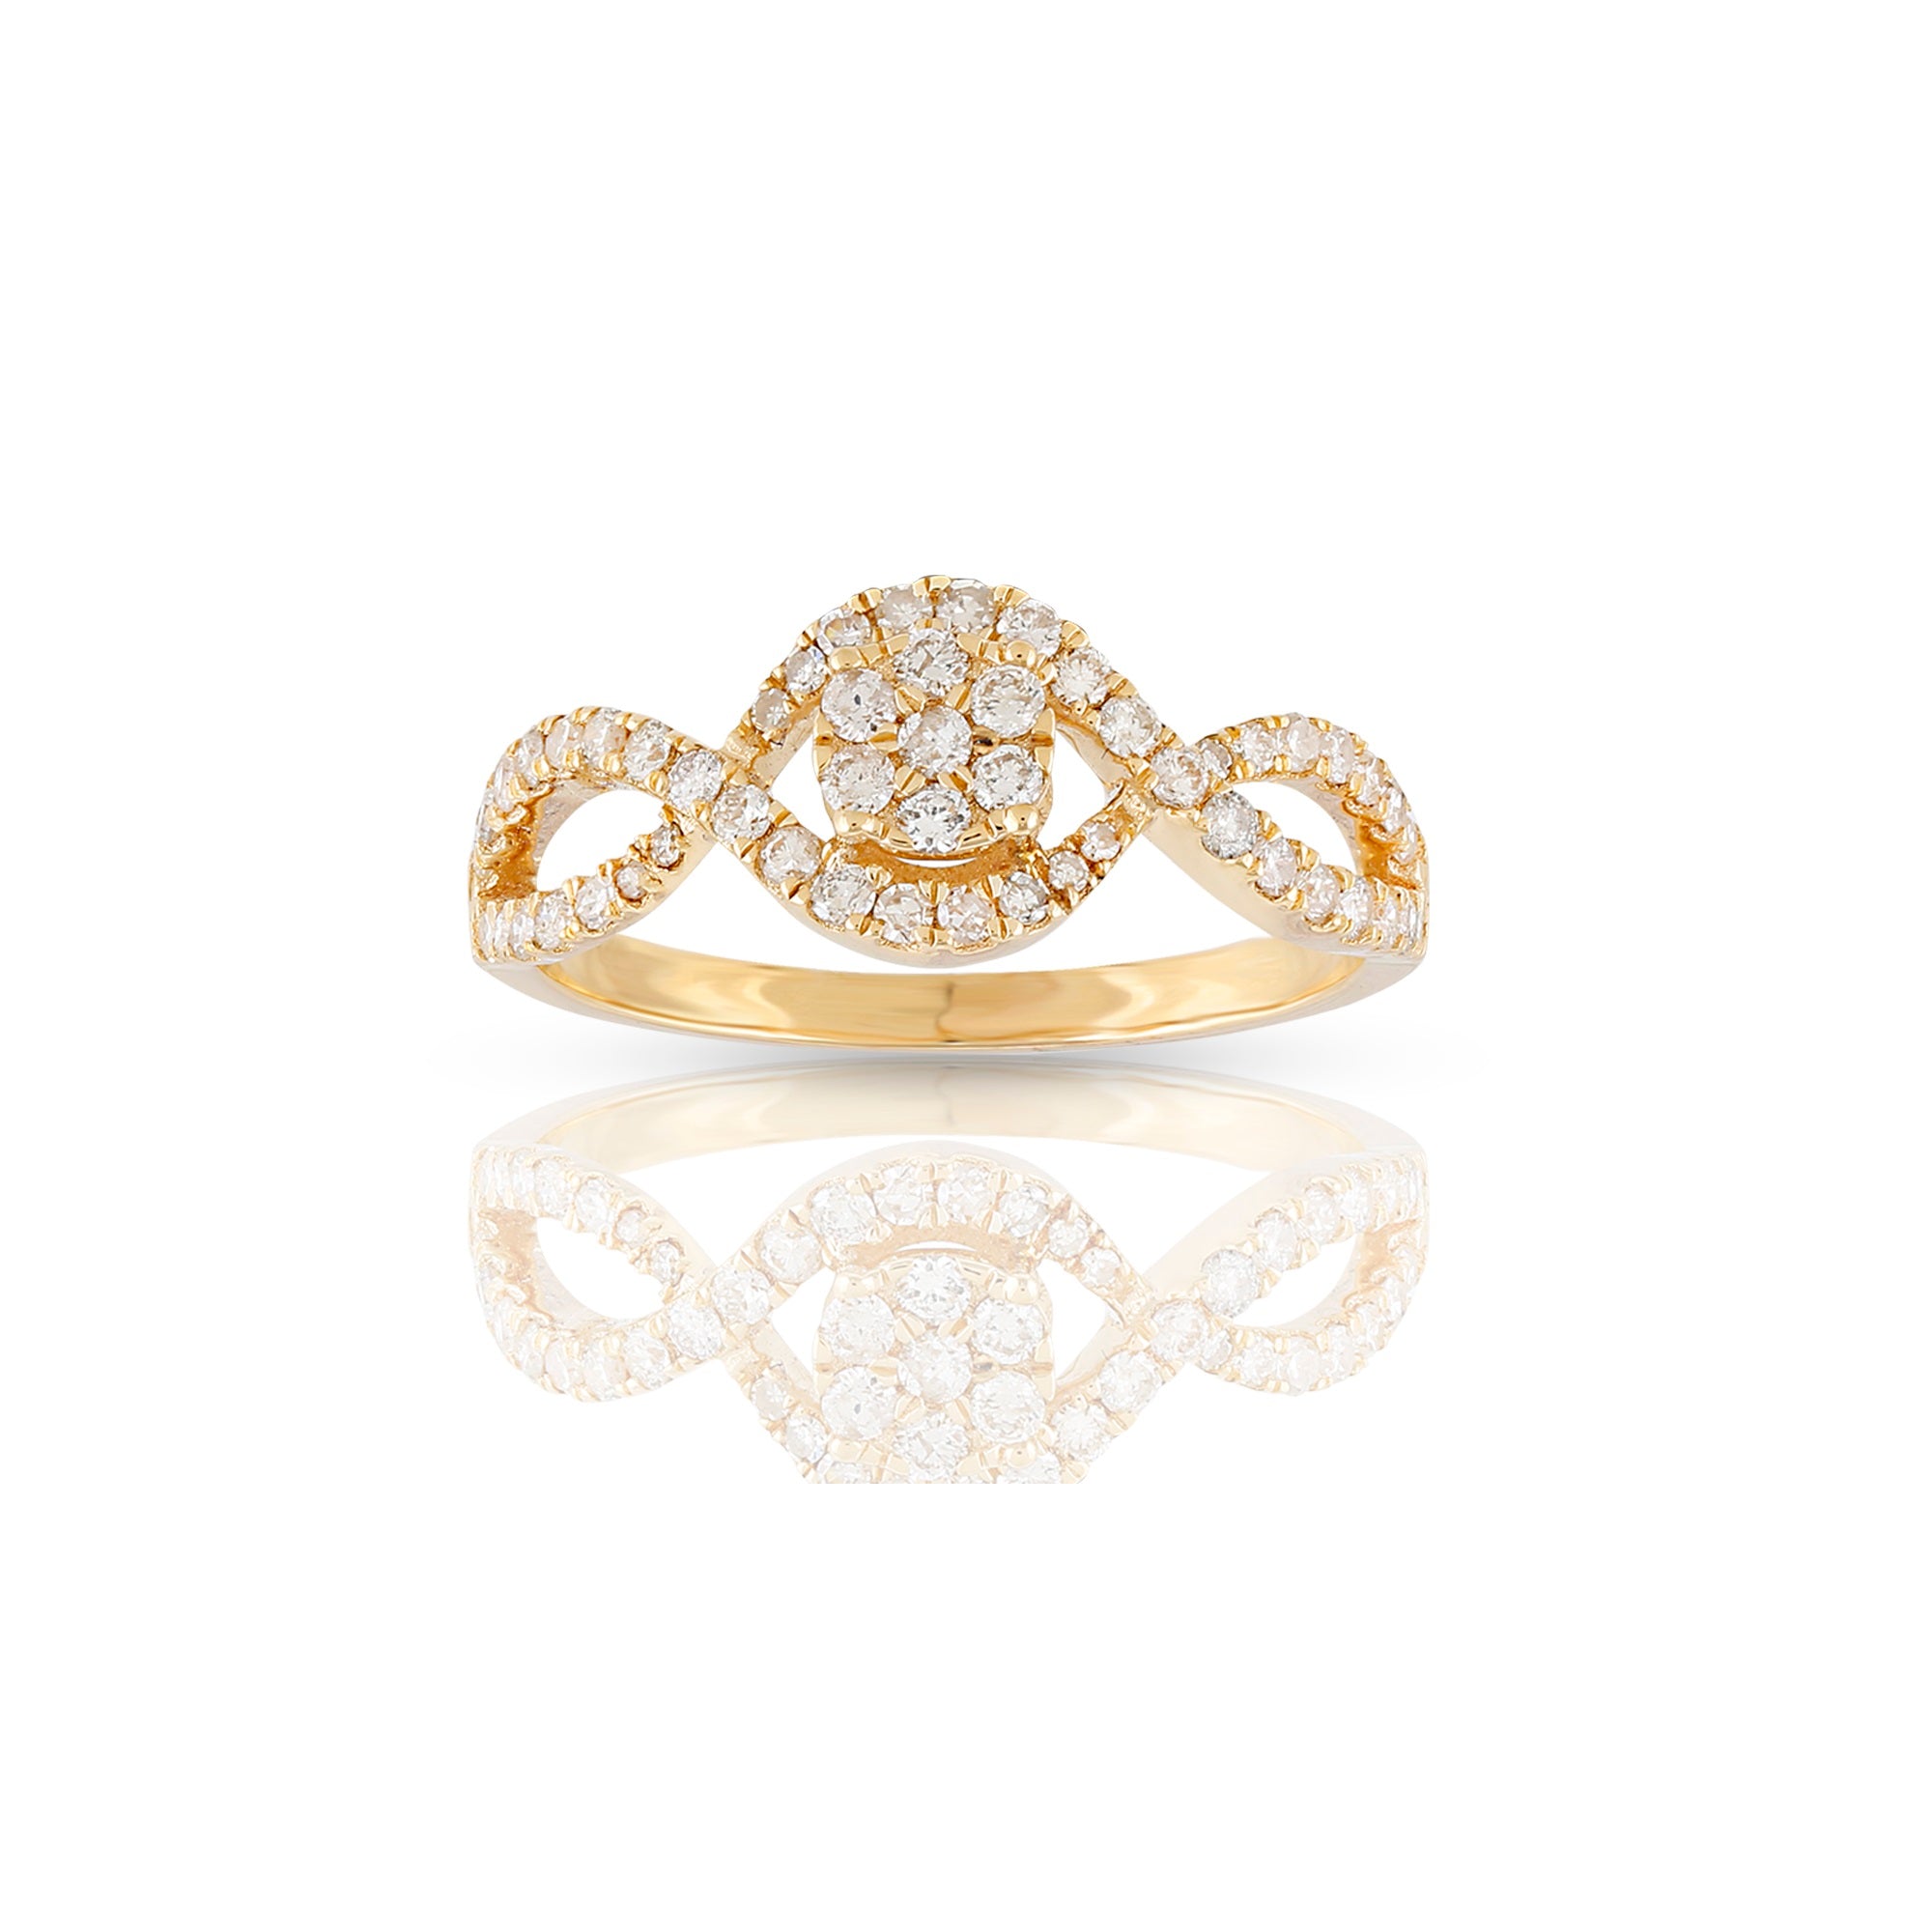 Yellow Gold Round Diamond Women's Ring by Rafaela Jewelry